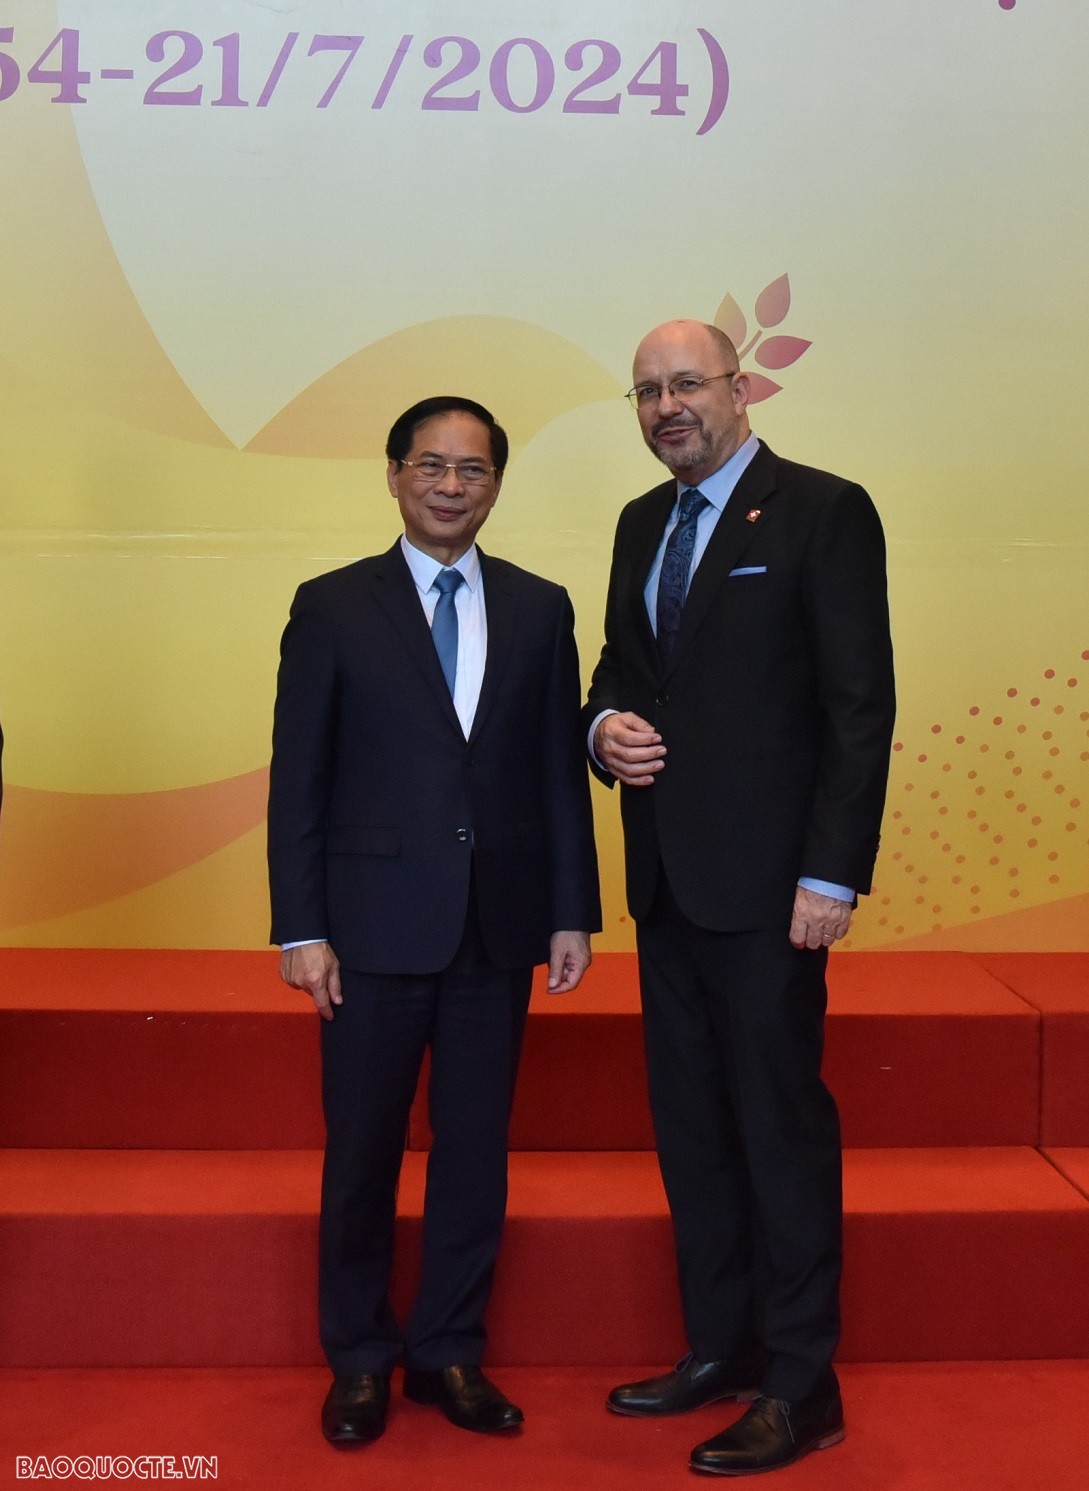 Các Đại sứ nước ngoài tại Việt Nam: Hiệp định Geneve gợi nhắc về tầm quan trọng của hòa bình